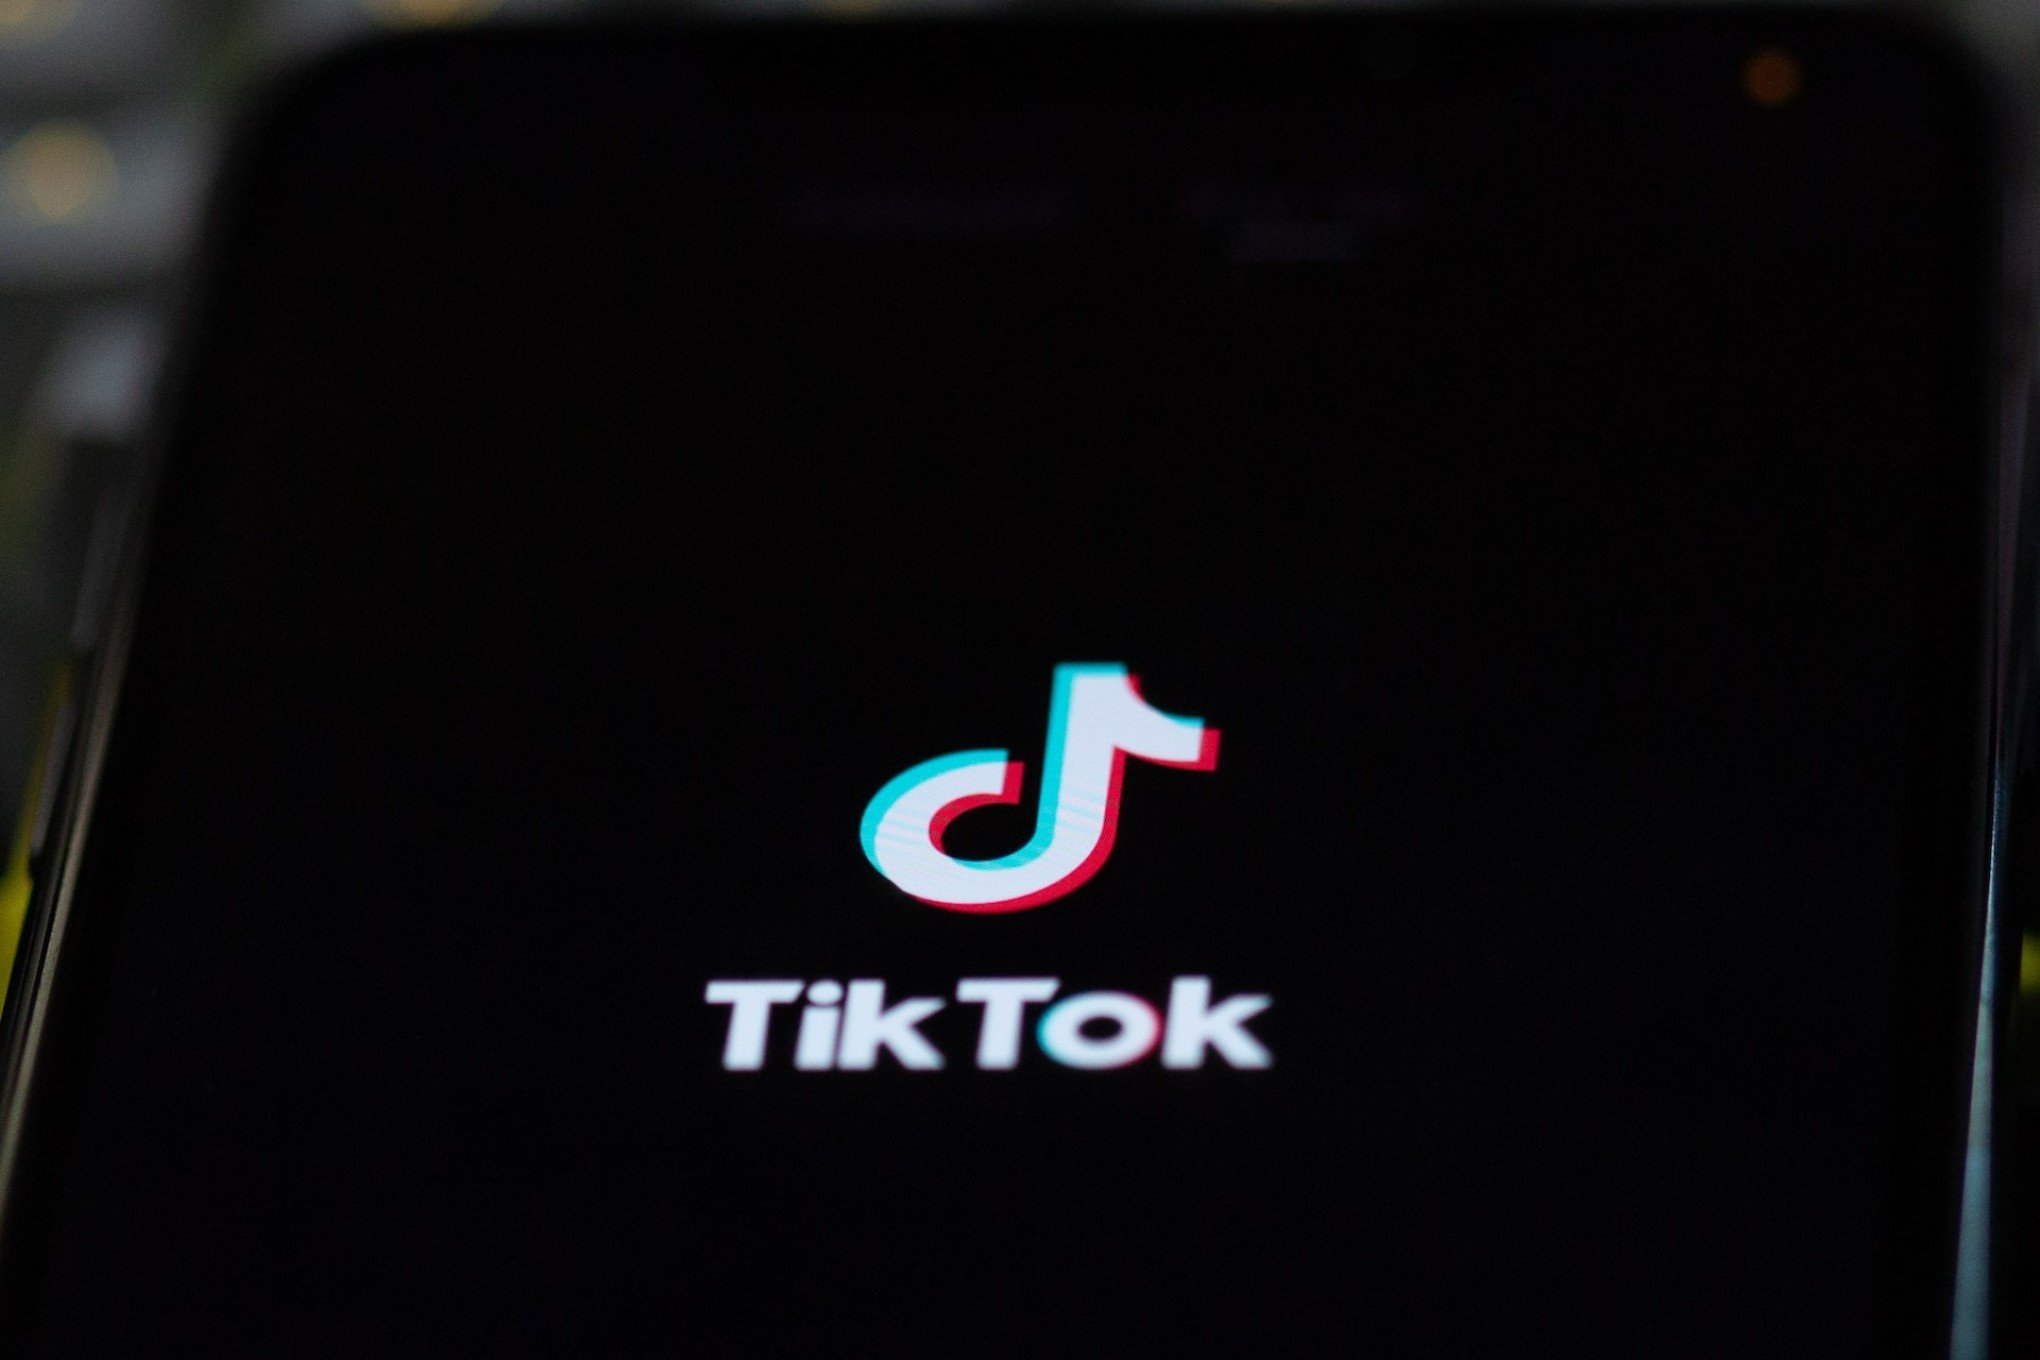 TOP 10: Quais são as músicas mais populares no TikTok em junho